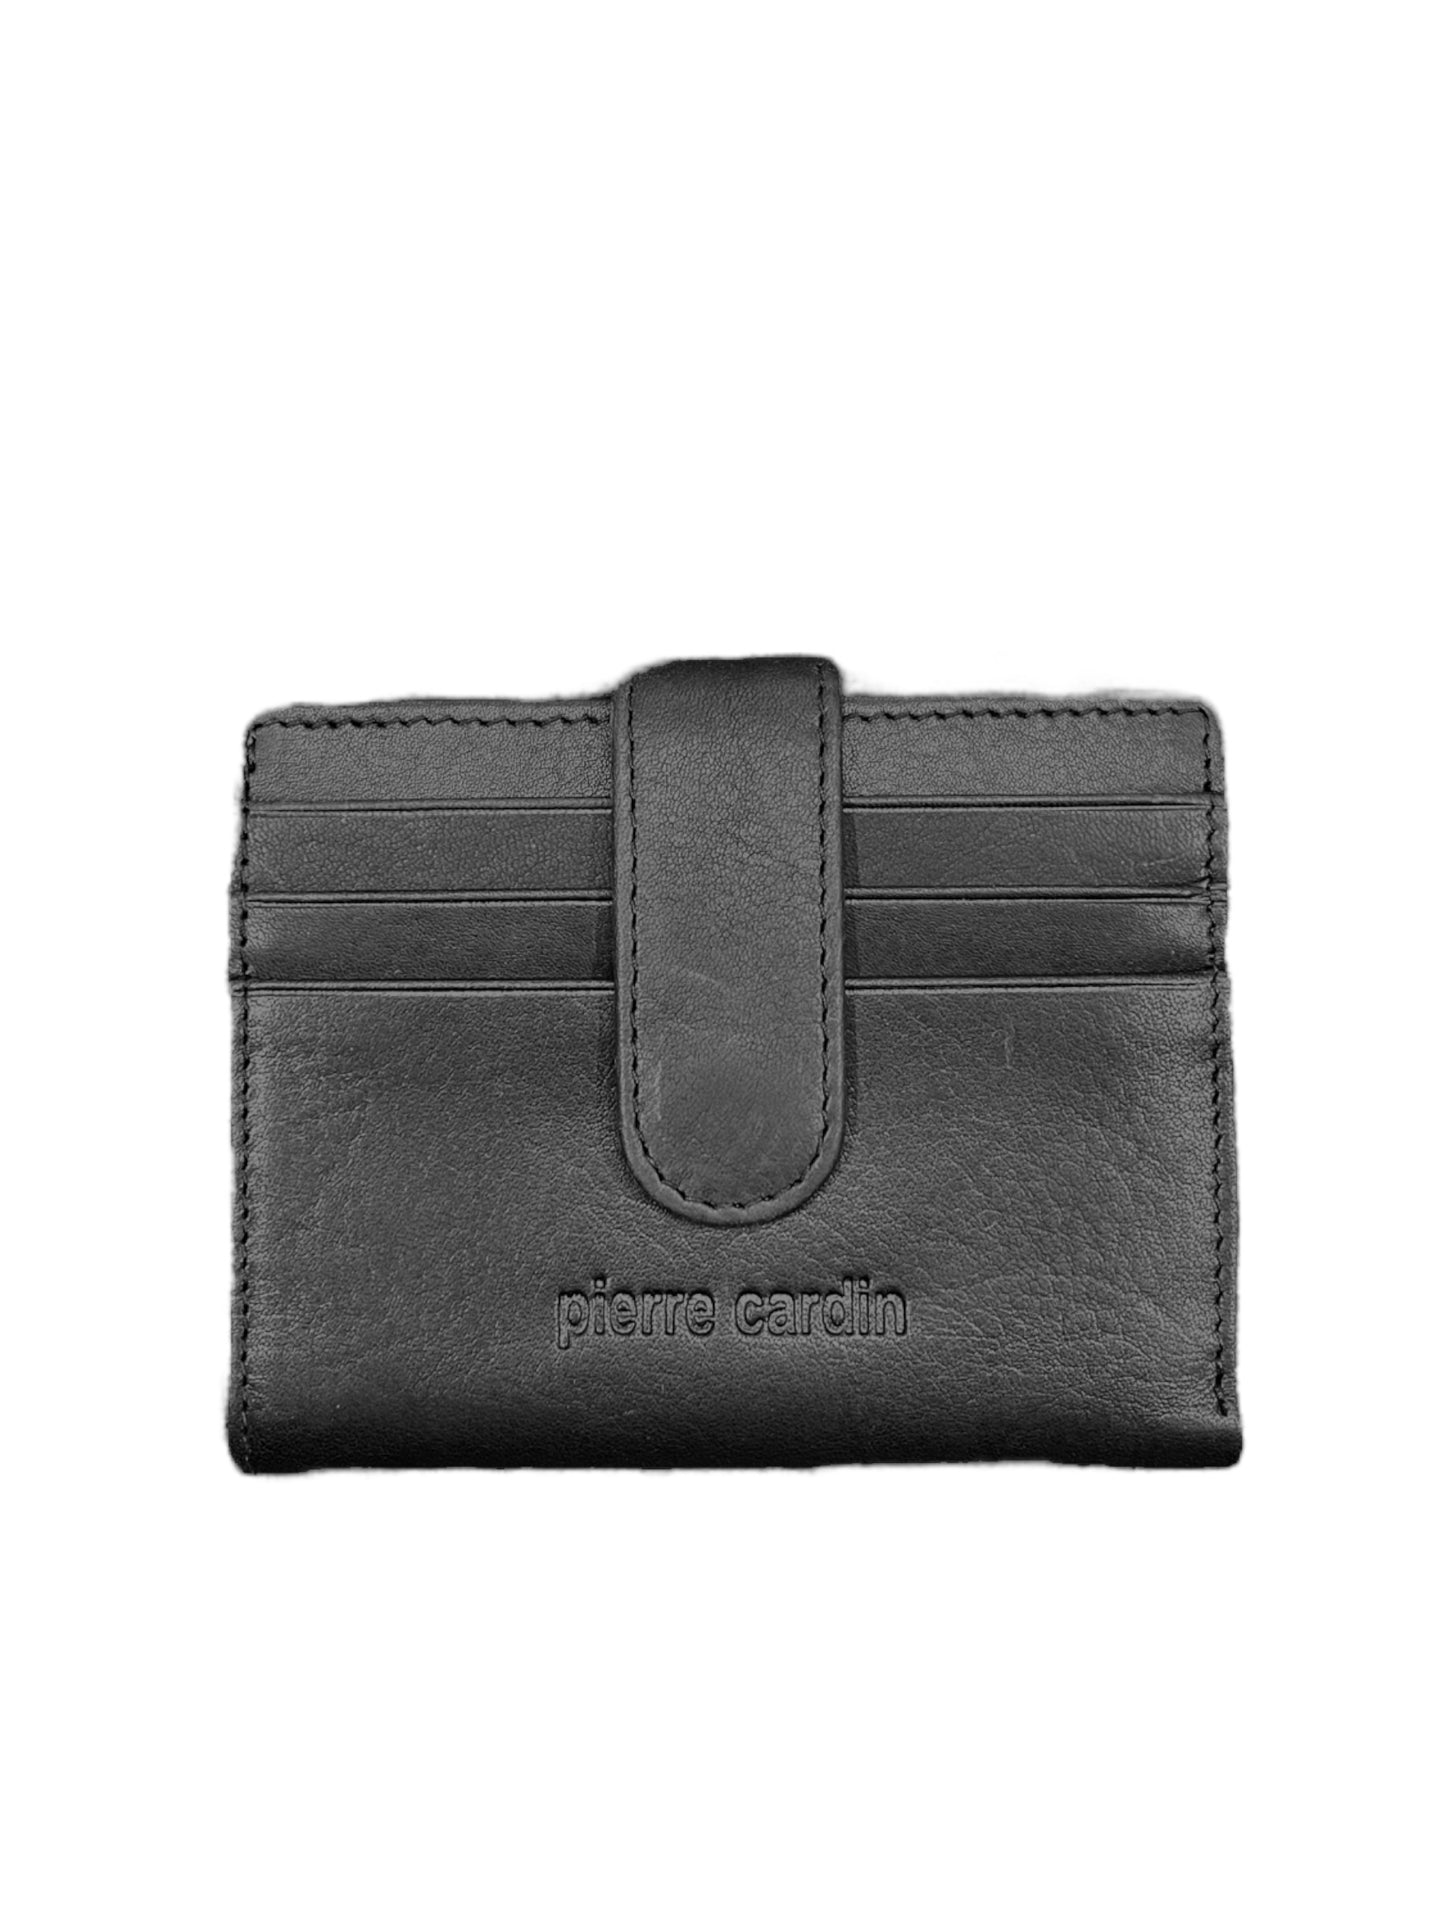 Pierre Cardin - Card Wallet - Black or Tan